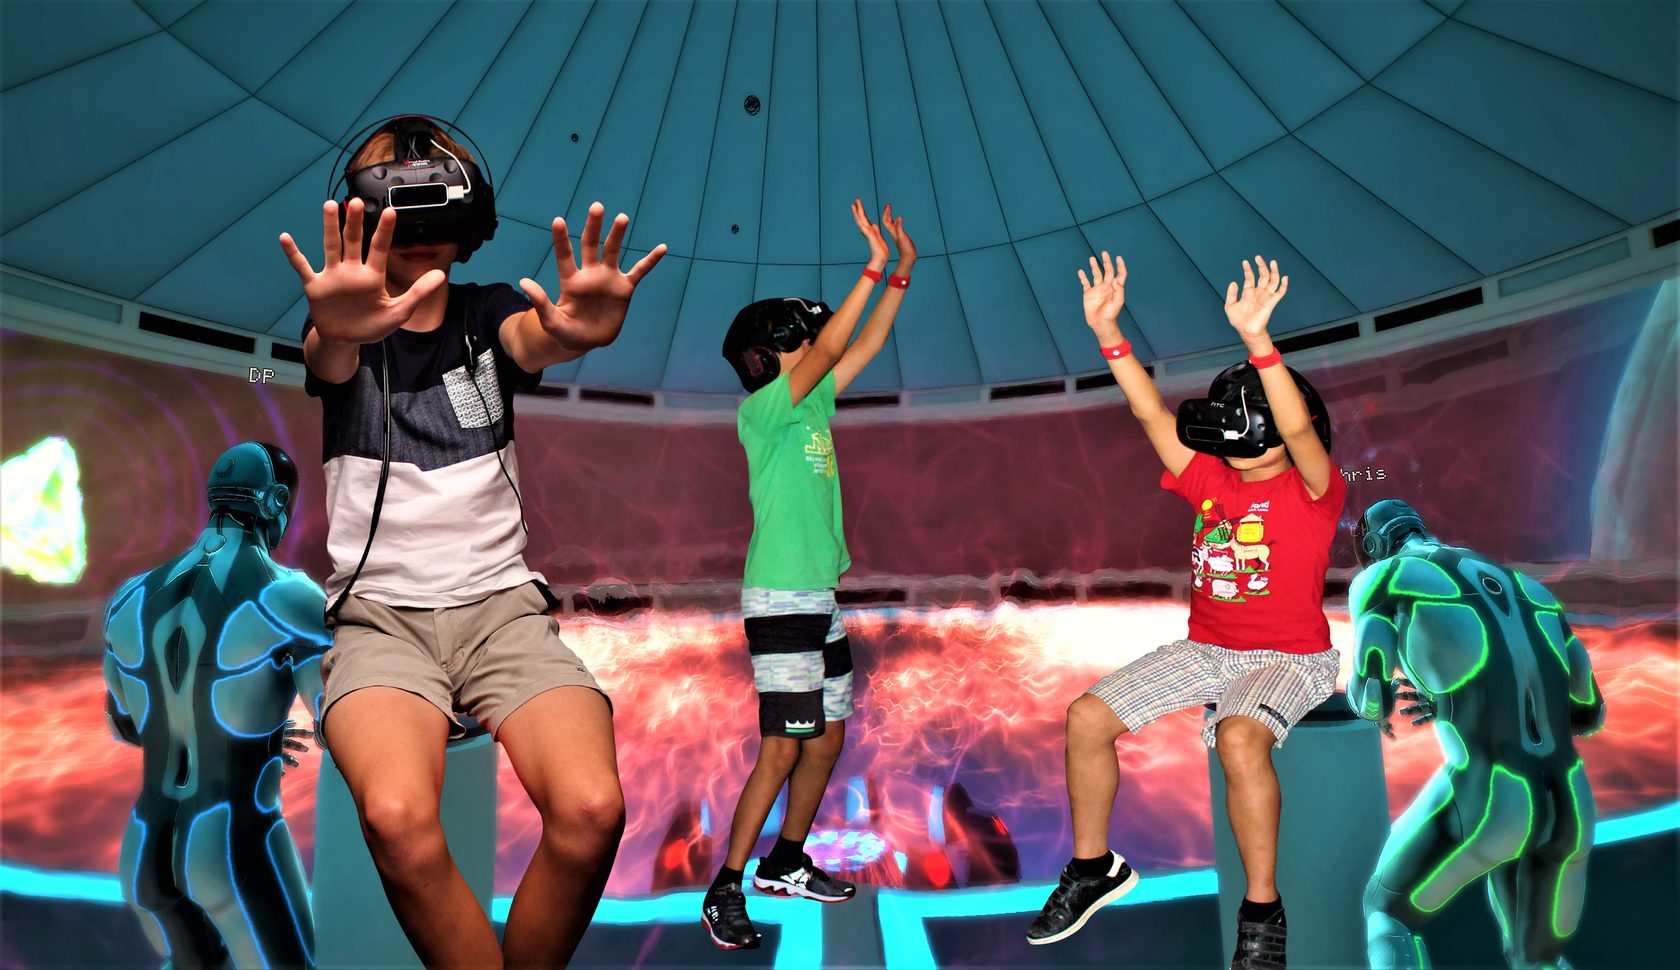 Vr club vrpark. ВР Дэвид Сангаре. Вечеринка виртуальная реальность. Виртуальная реальность дети. Детский праздник VR.